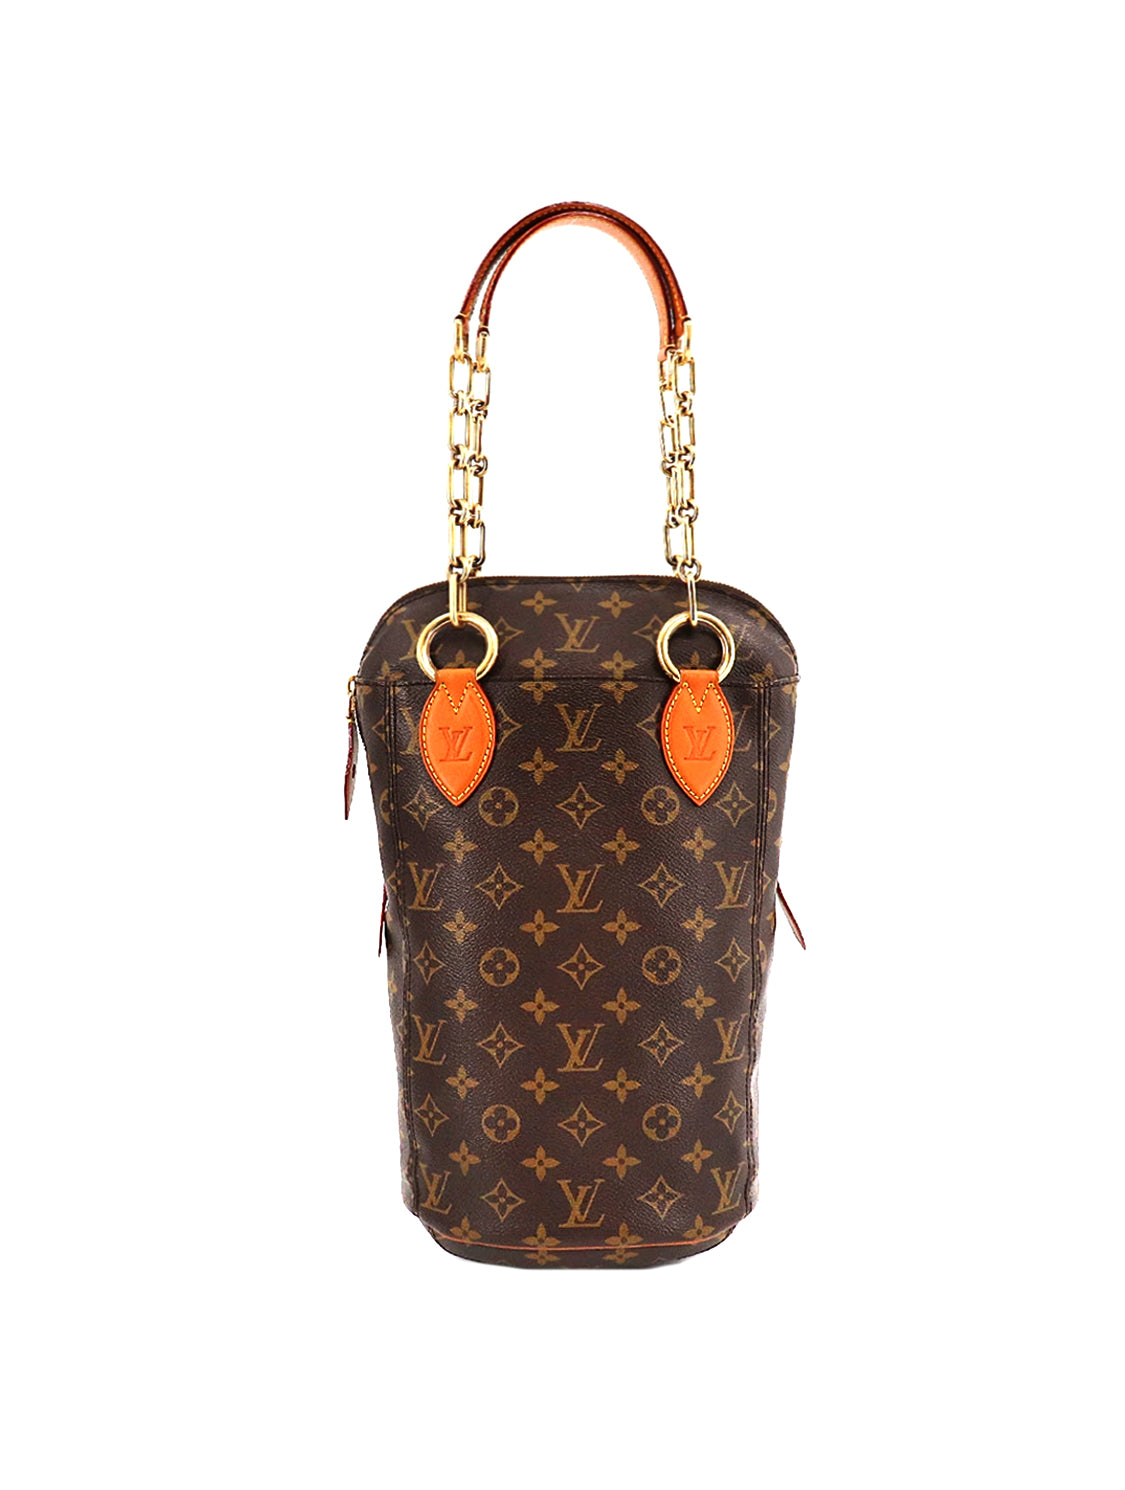 Louis Vuitton x Karl Lagerfeld 2014 Rare Punching Bag